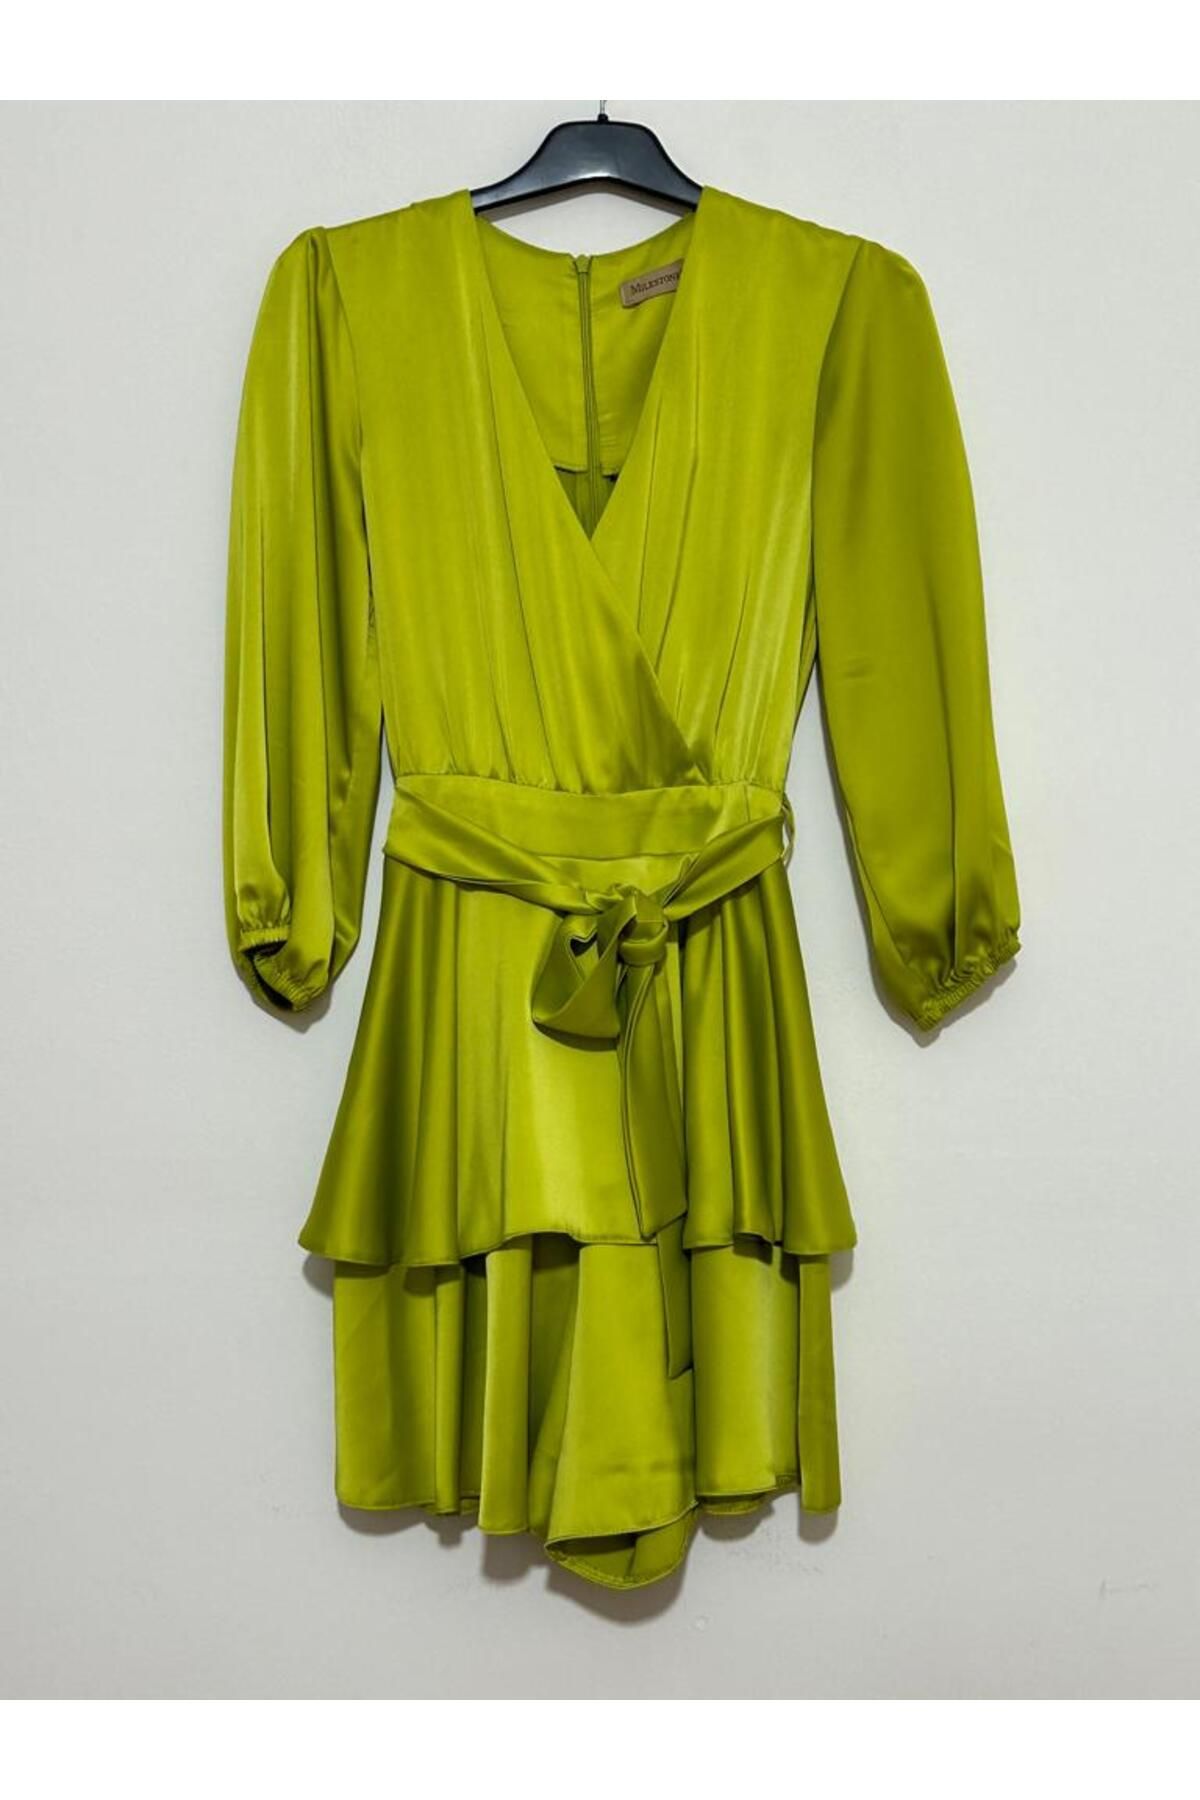 Milestone Yeşil Şortlu Saten Elbise